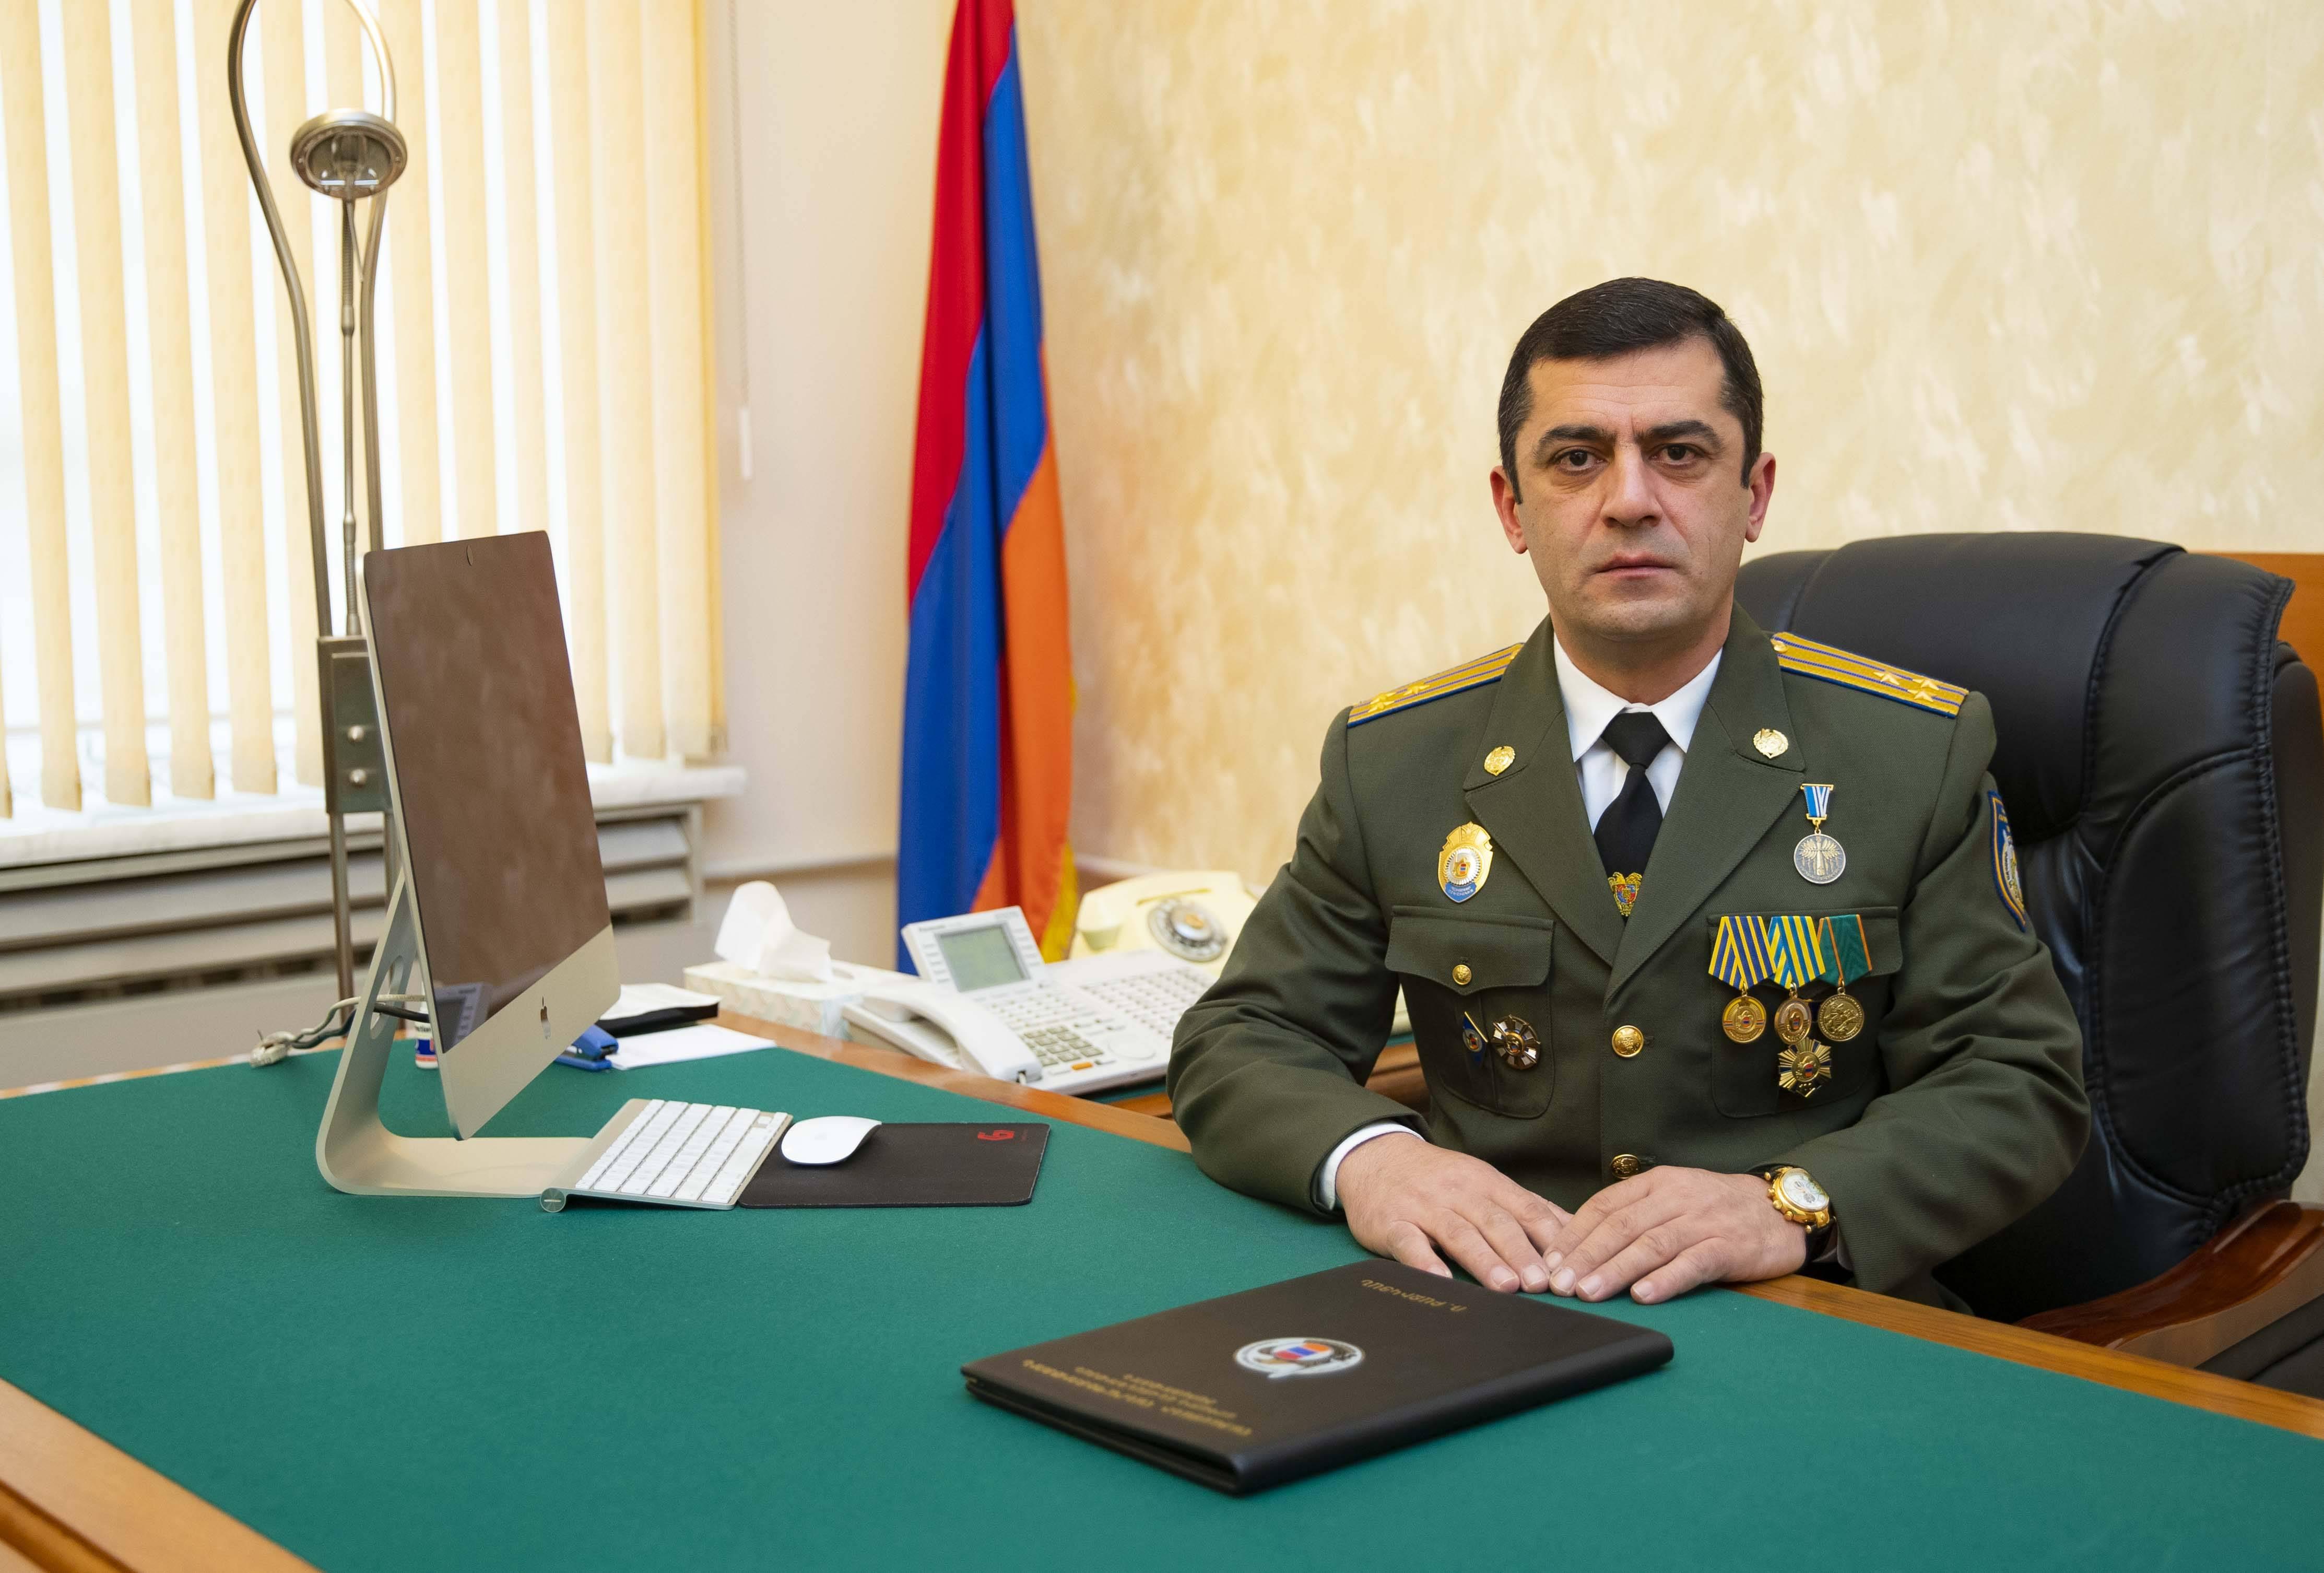 Ermənistan Milli Təhlükəsizlik Şurasının direktor müavini işdən çıxarıldı